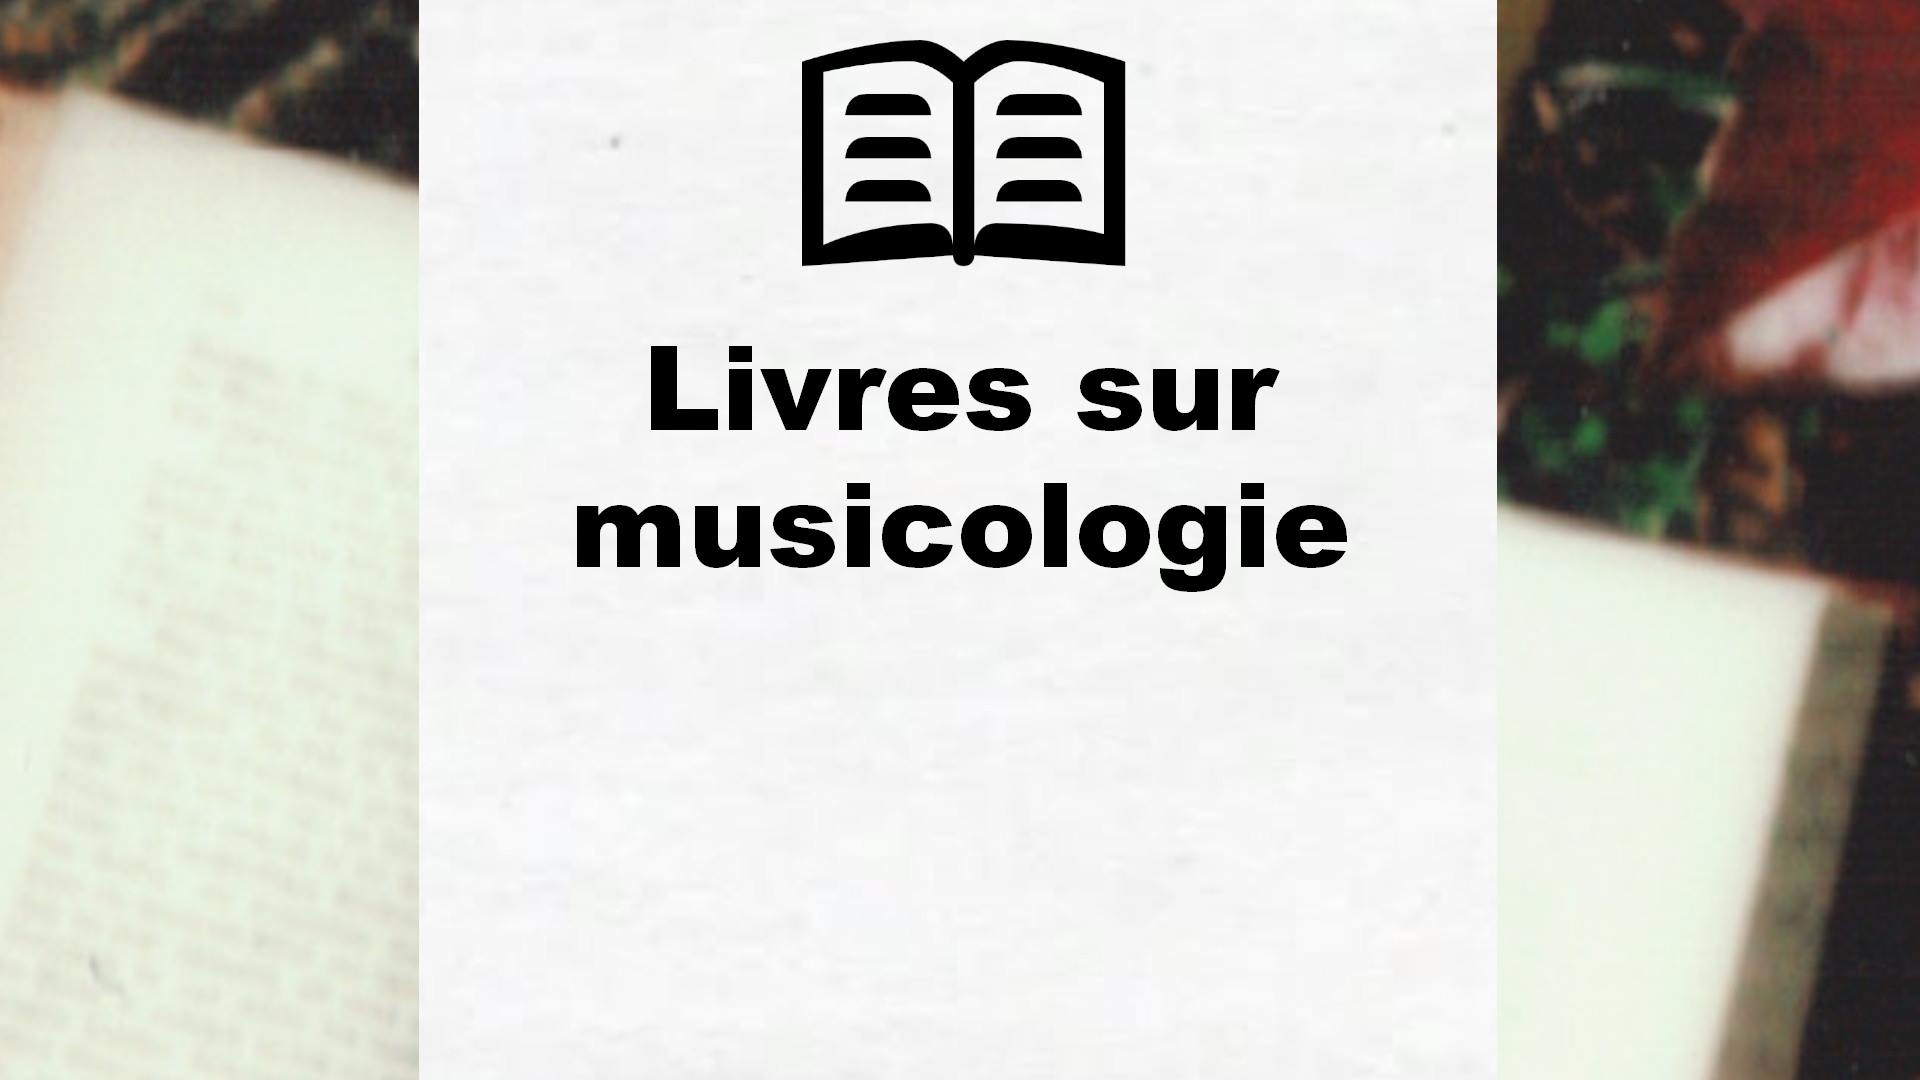 Livres sur musicologie